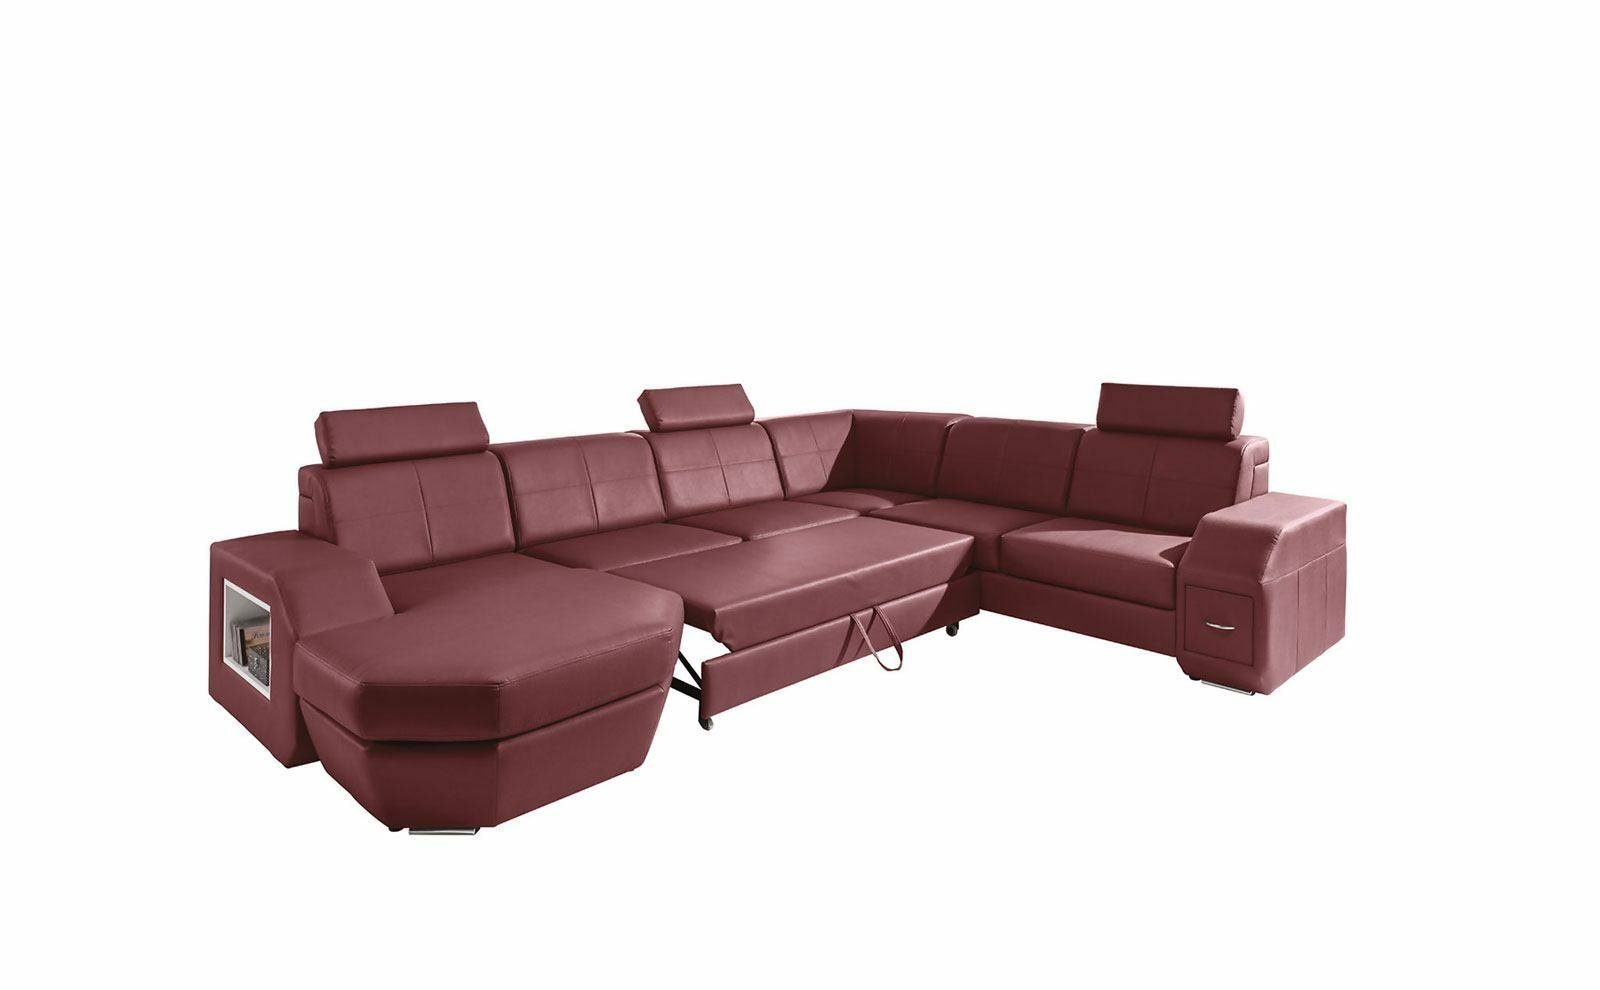 JVmoebel Ecksofa, Edle Design Garnitur Wohnlandschaft Sofas Eck Couch Couchen Polster